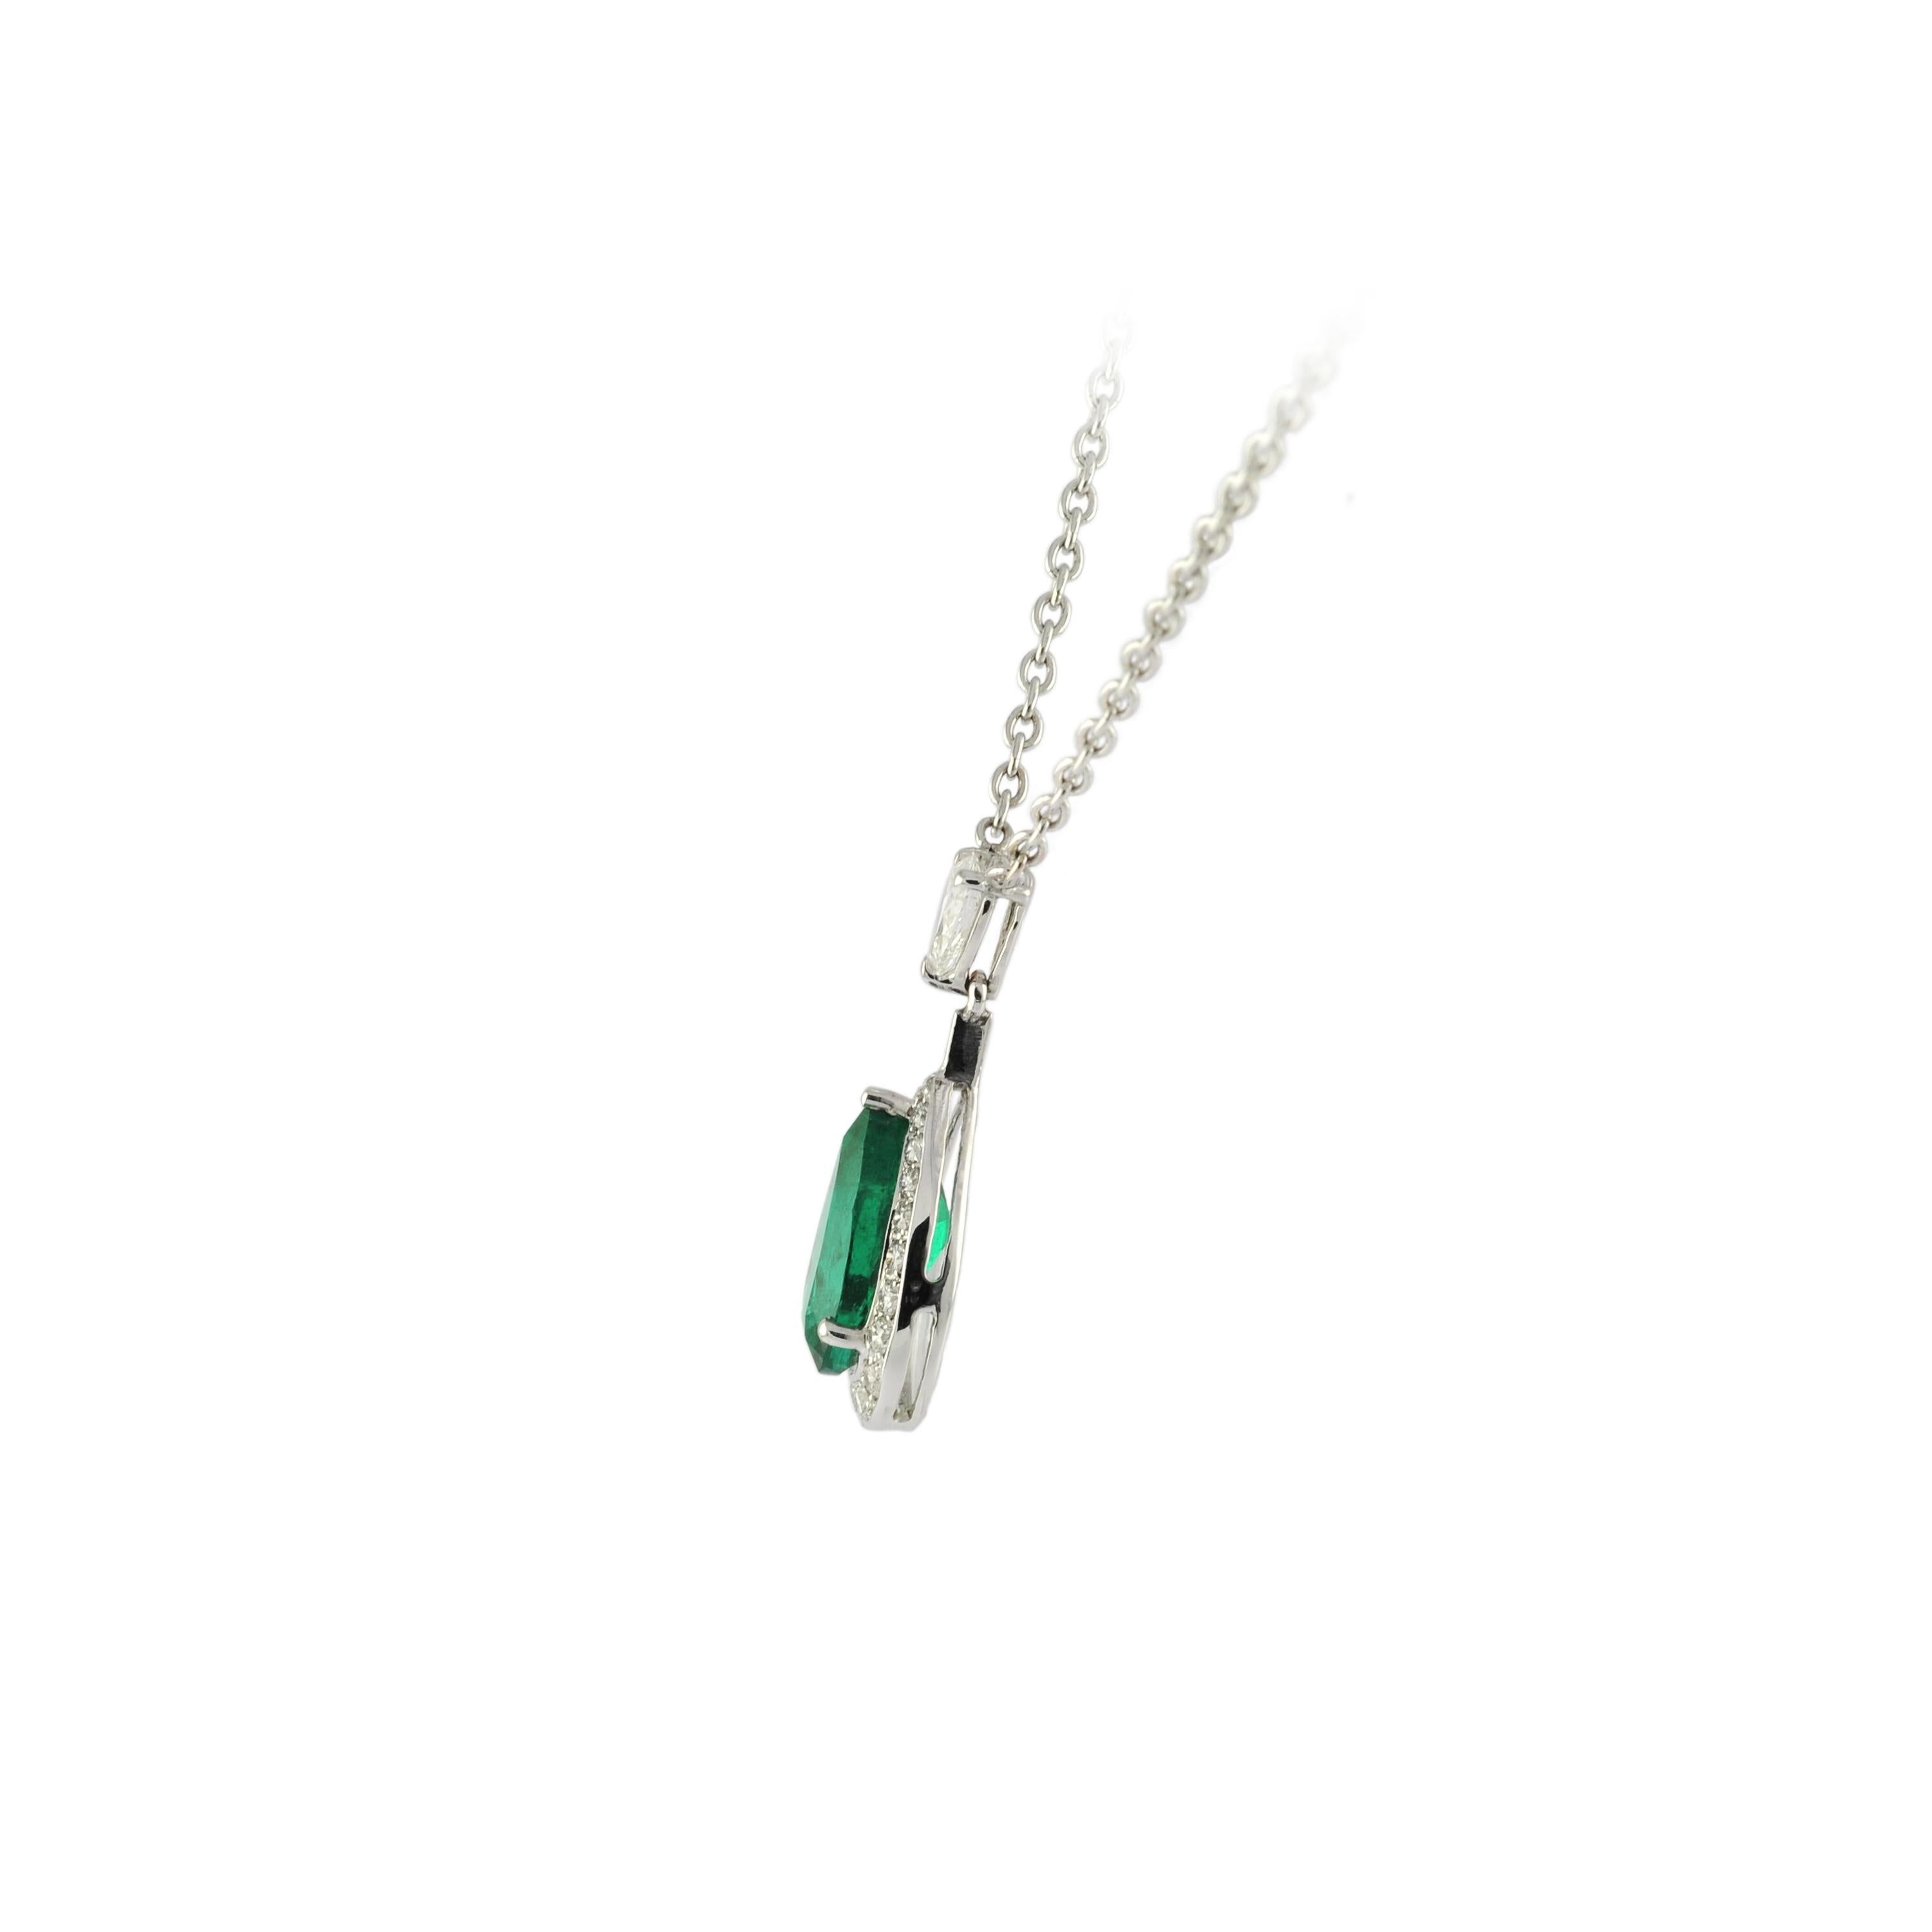 Oval Cut 1.88 Carat Pear Shape Emerald, 0.72 Carat Diamond, 18 Karat White Gold Necklace For Sale